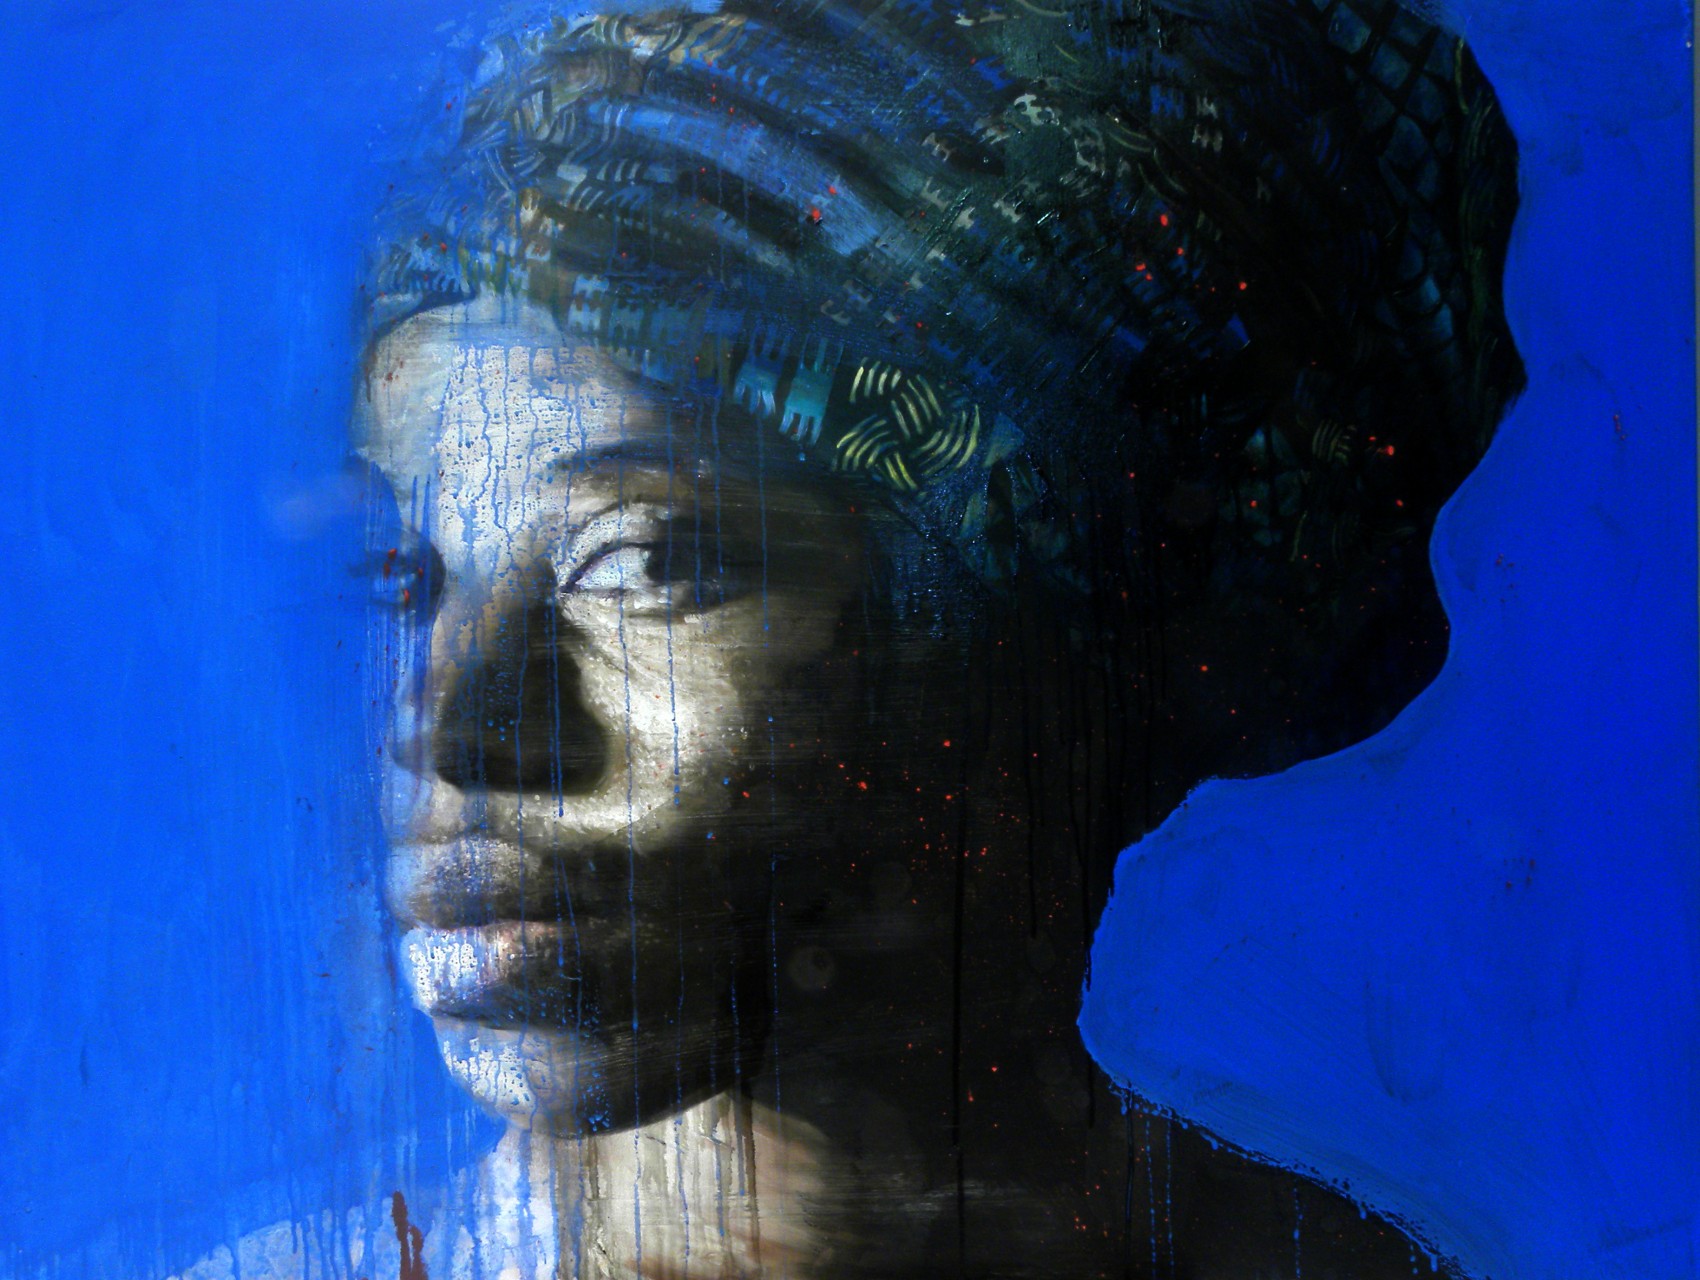 Osas fondo blue / Osas with blue background ( 100x130 ) - olio e acrilico su tela / oil and acrylic on canvas - 2014